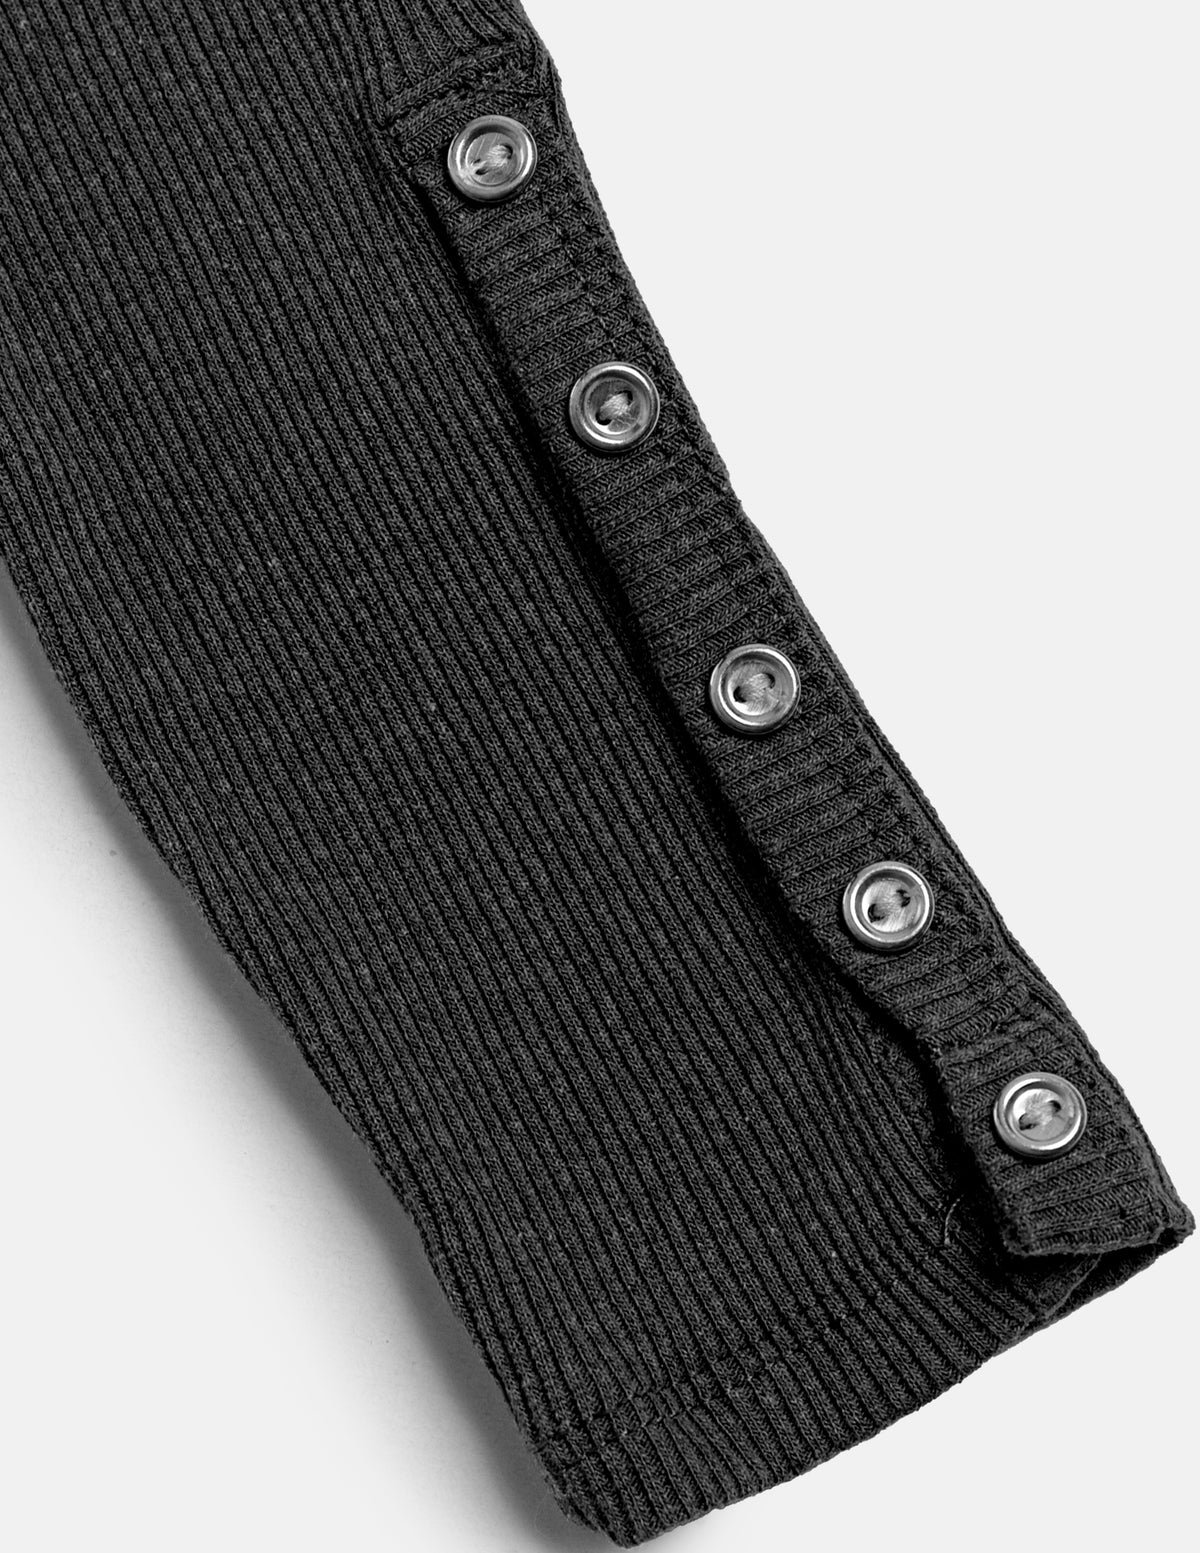 Blusa manga larga con cierre delantero y detalle de botones en mangas.